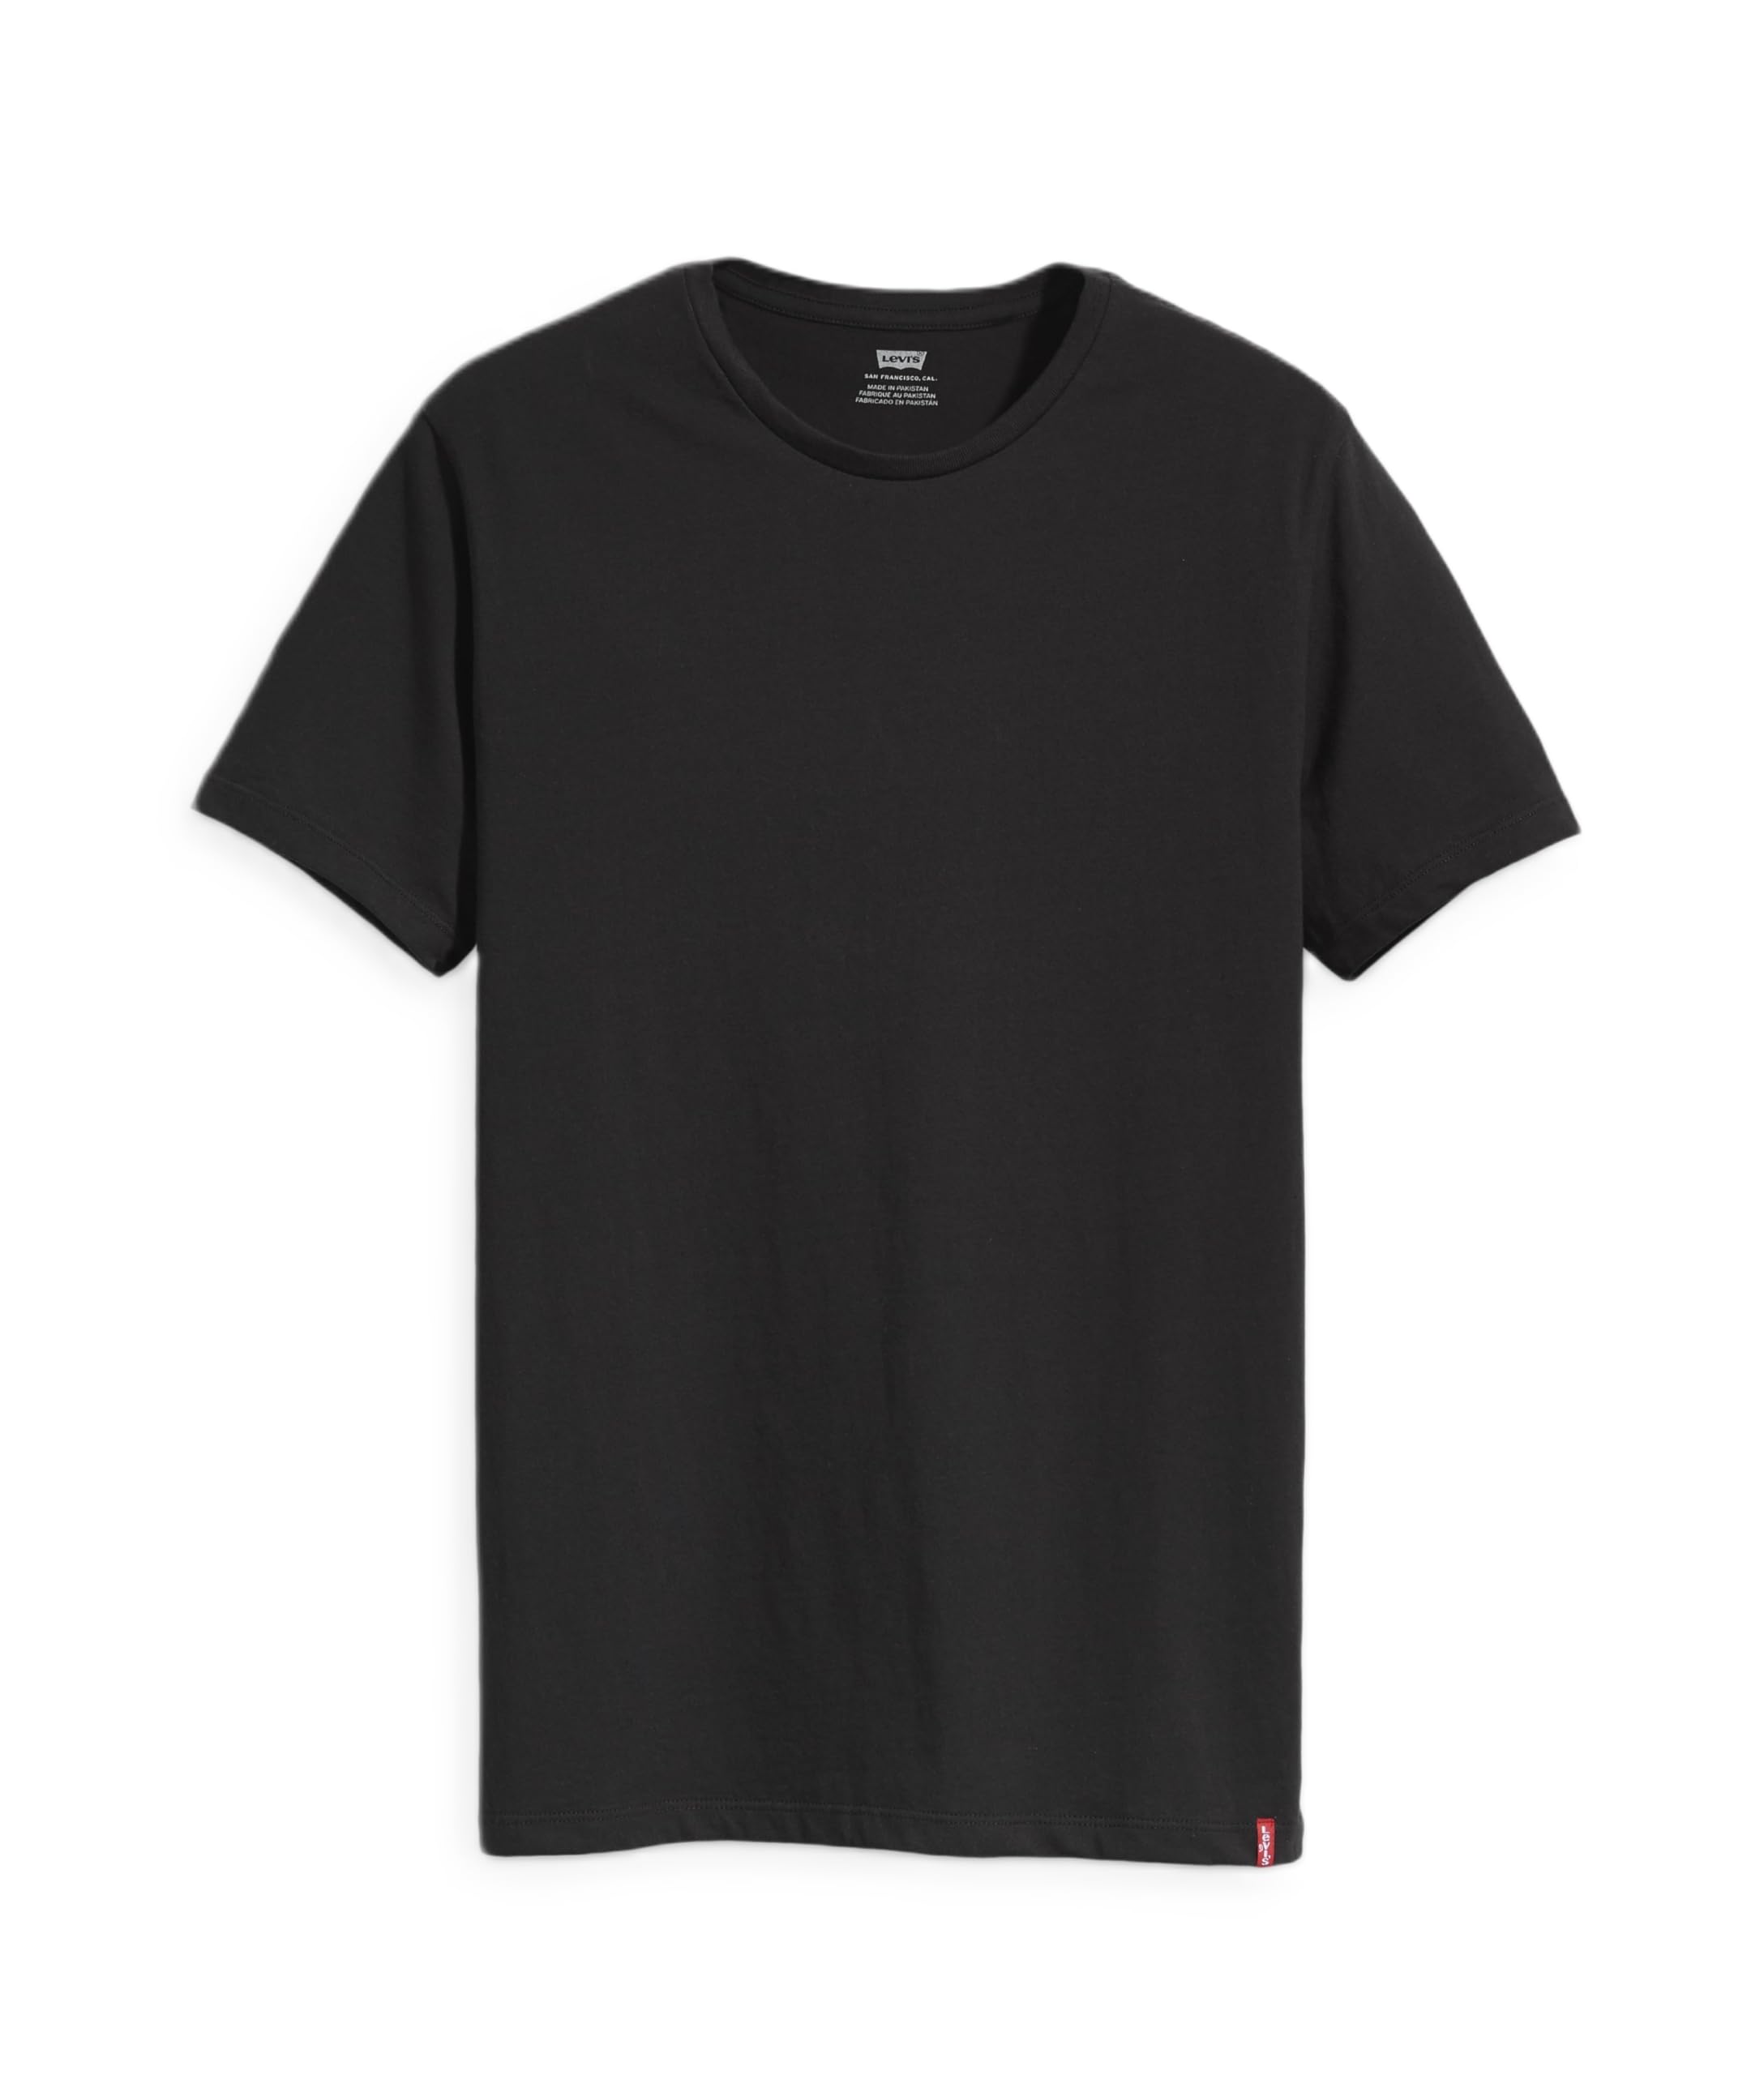 楽天Fleume[リーバイス] Tシャツ 2パックTシャツ 半袖 2枚組 メンズ 79541-0001 TWO-PACK TEE BLACK + BLACK S